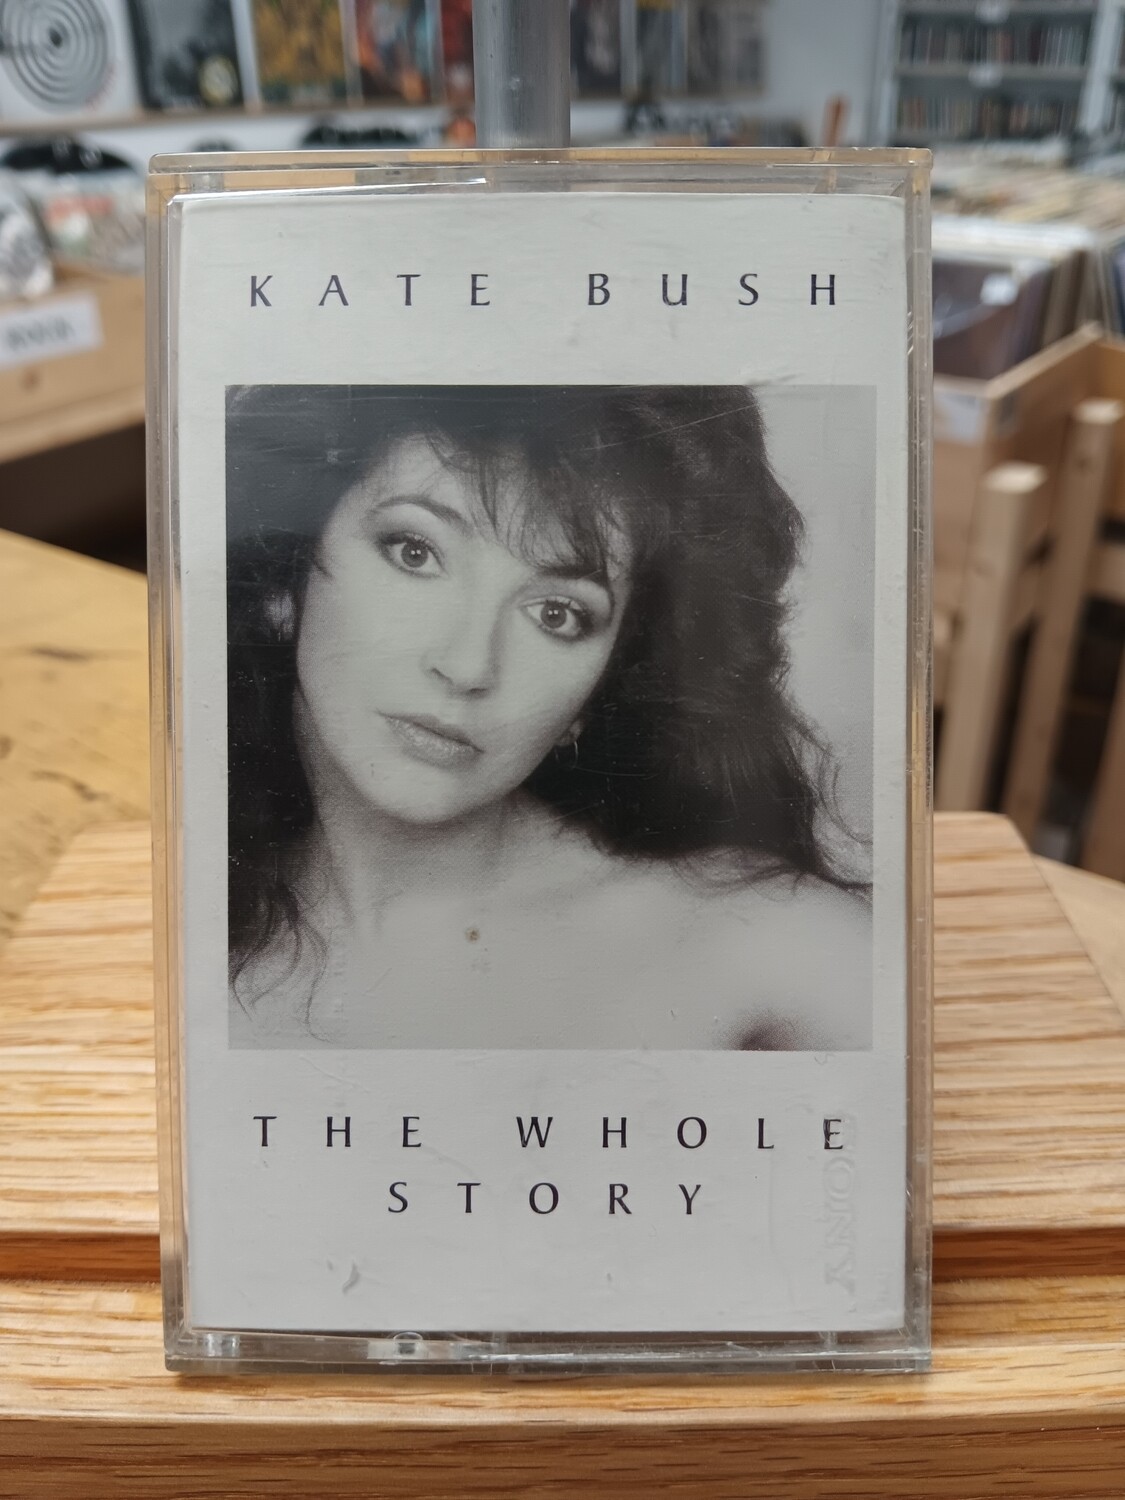 KATE BUSH - The whole story (CASSETTE)